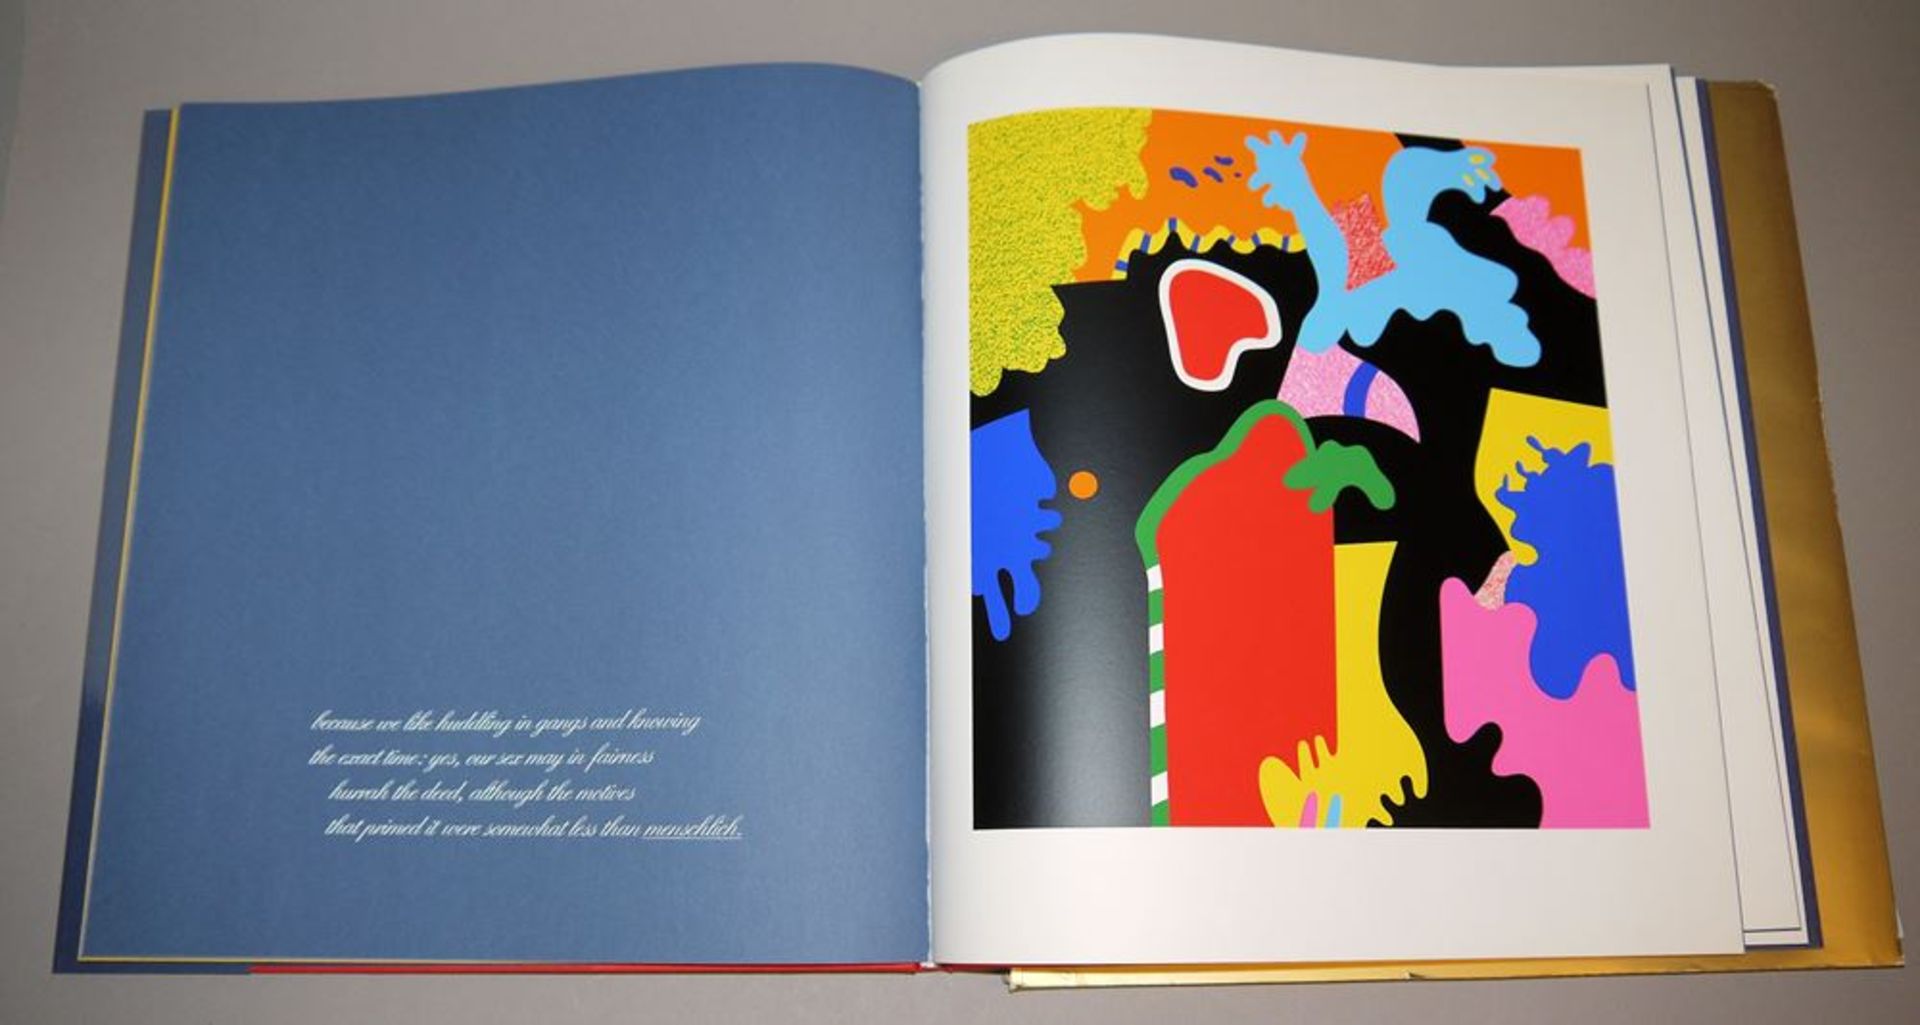 Otmar Alt - Wystan Hugh Auden, "Die große Veränderung", Buch mit 10 Farbserigraphien, 1973